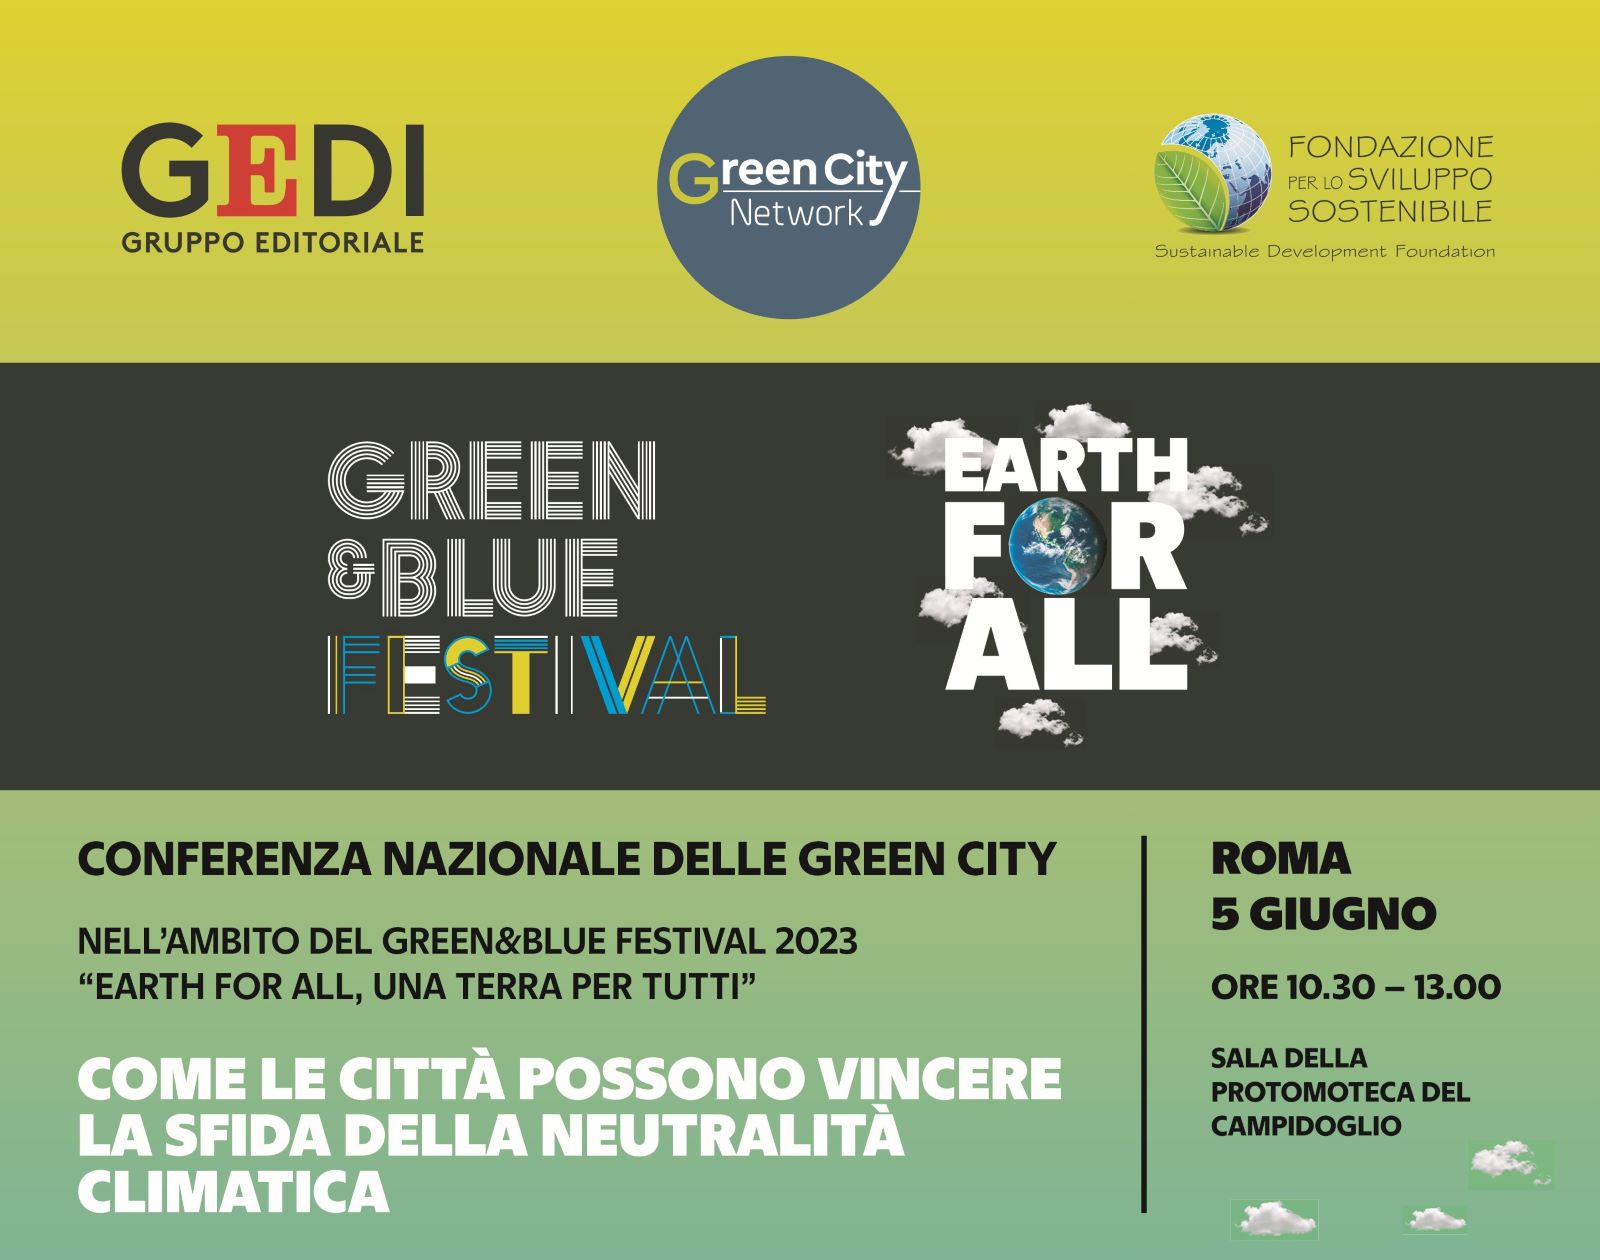 Green Retail  - Conferenza nazionale delle green city, il 5 giugno a Roma 